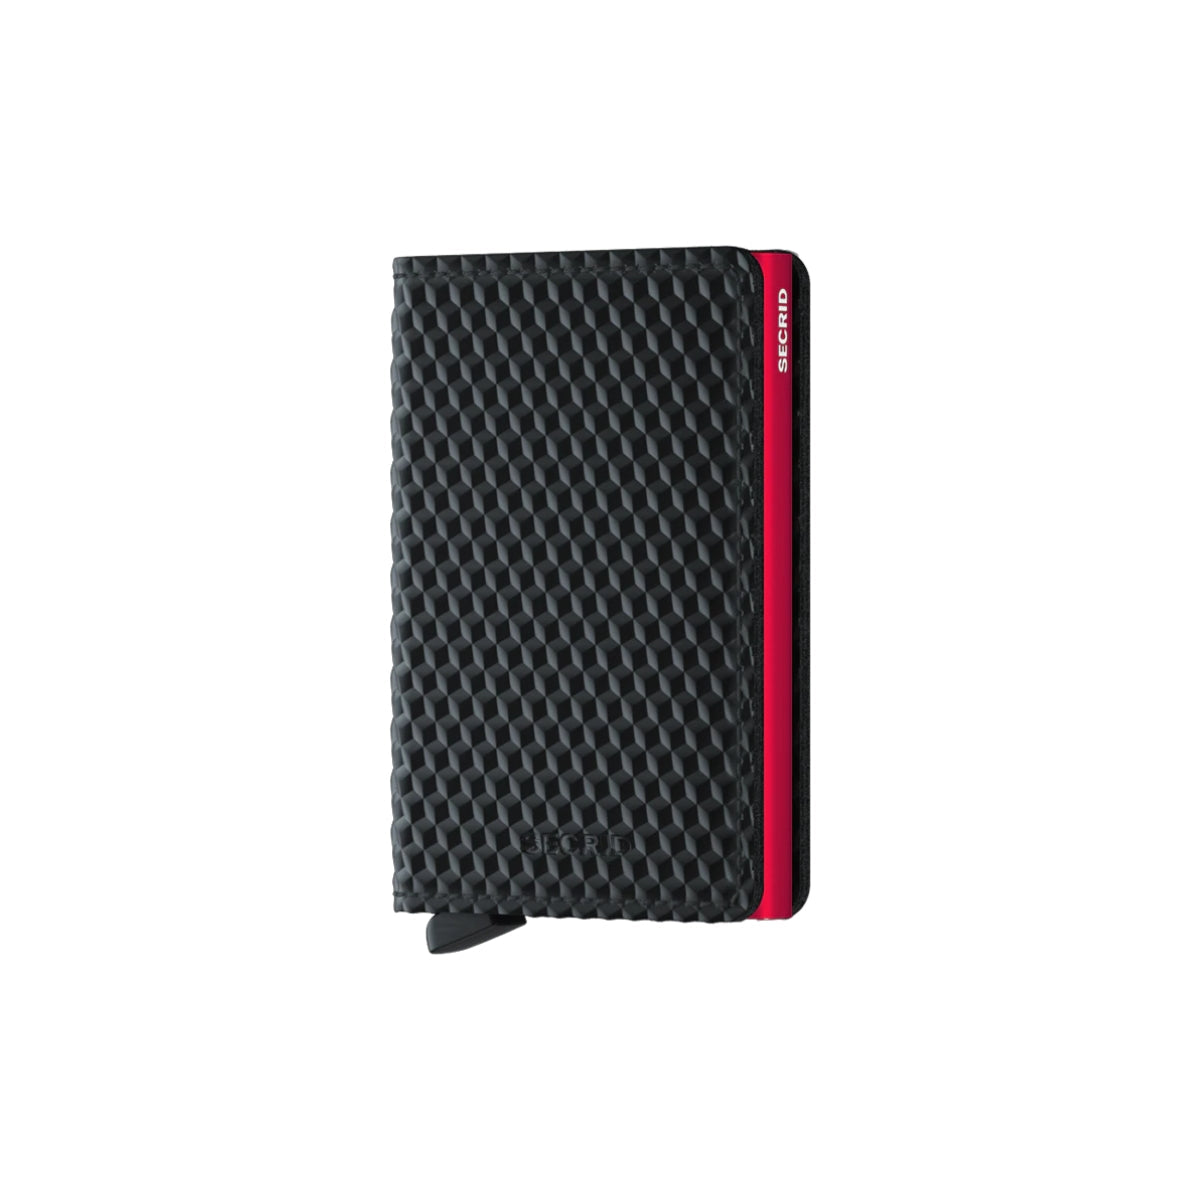 Secrid Cubic Slim Wallet in Black/Red